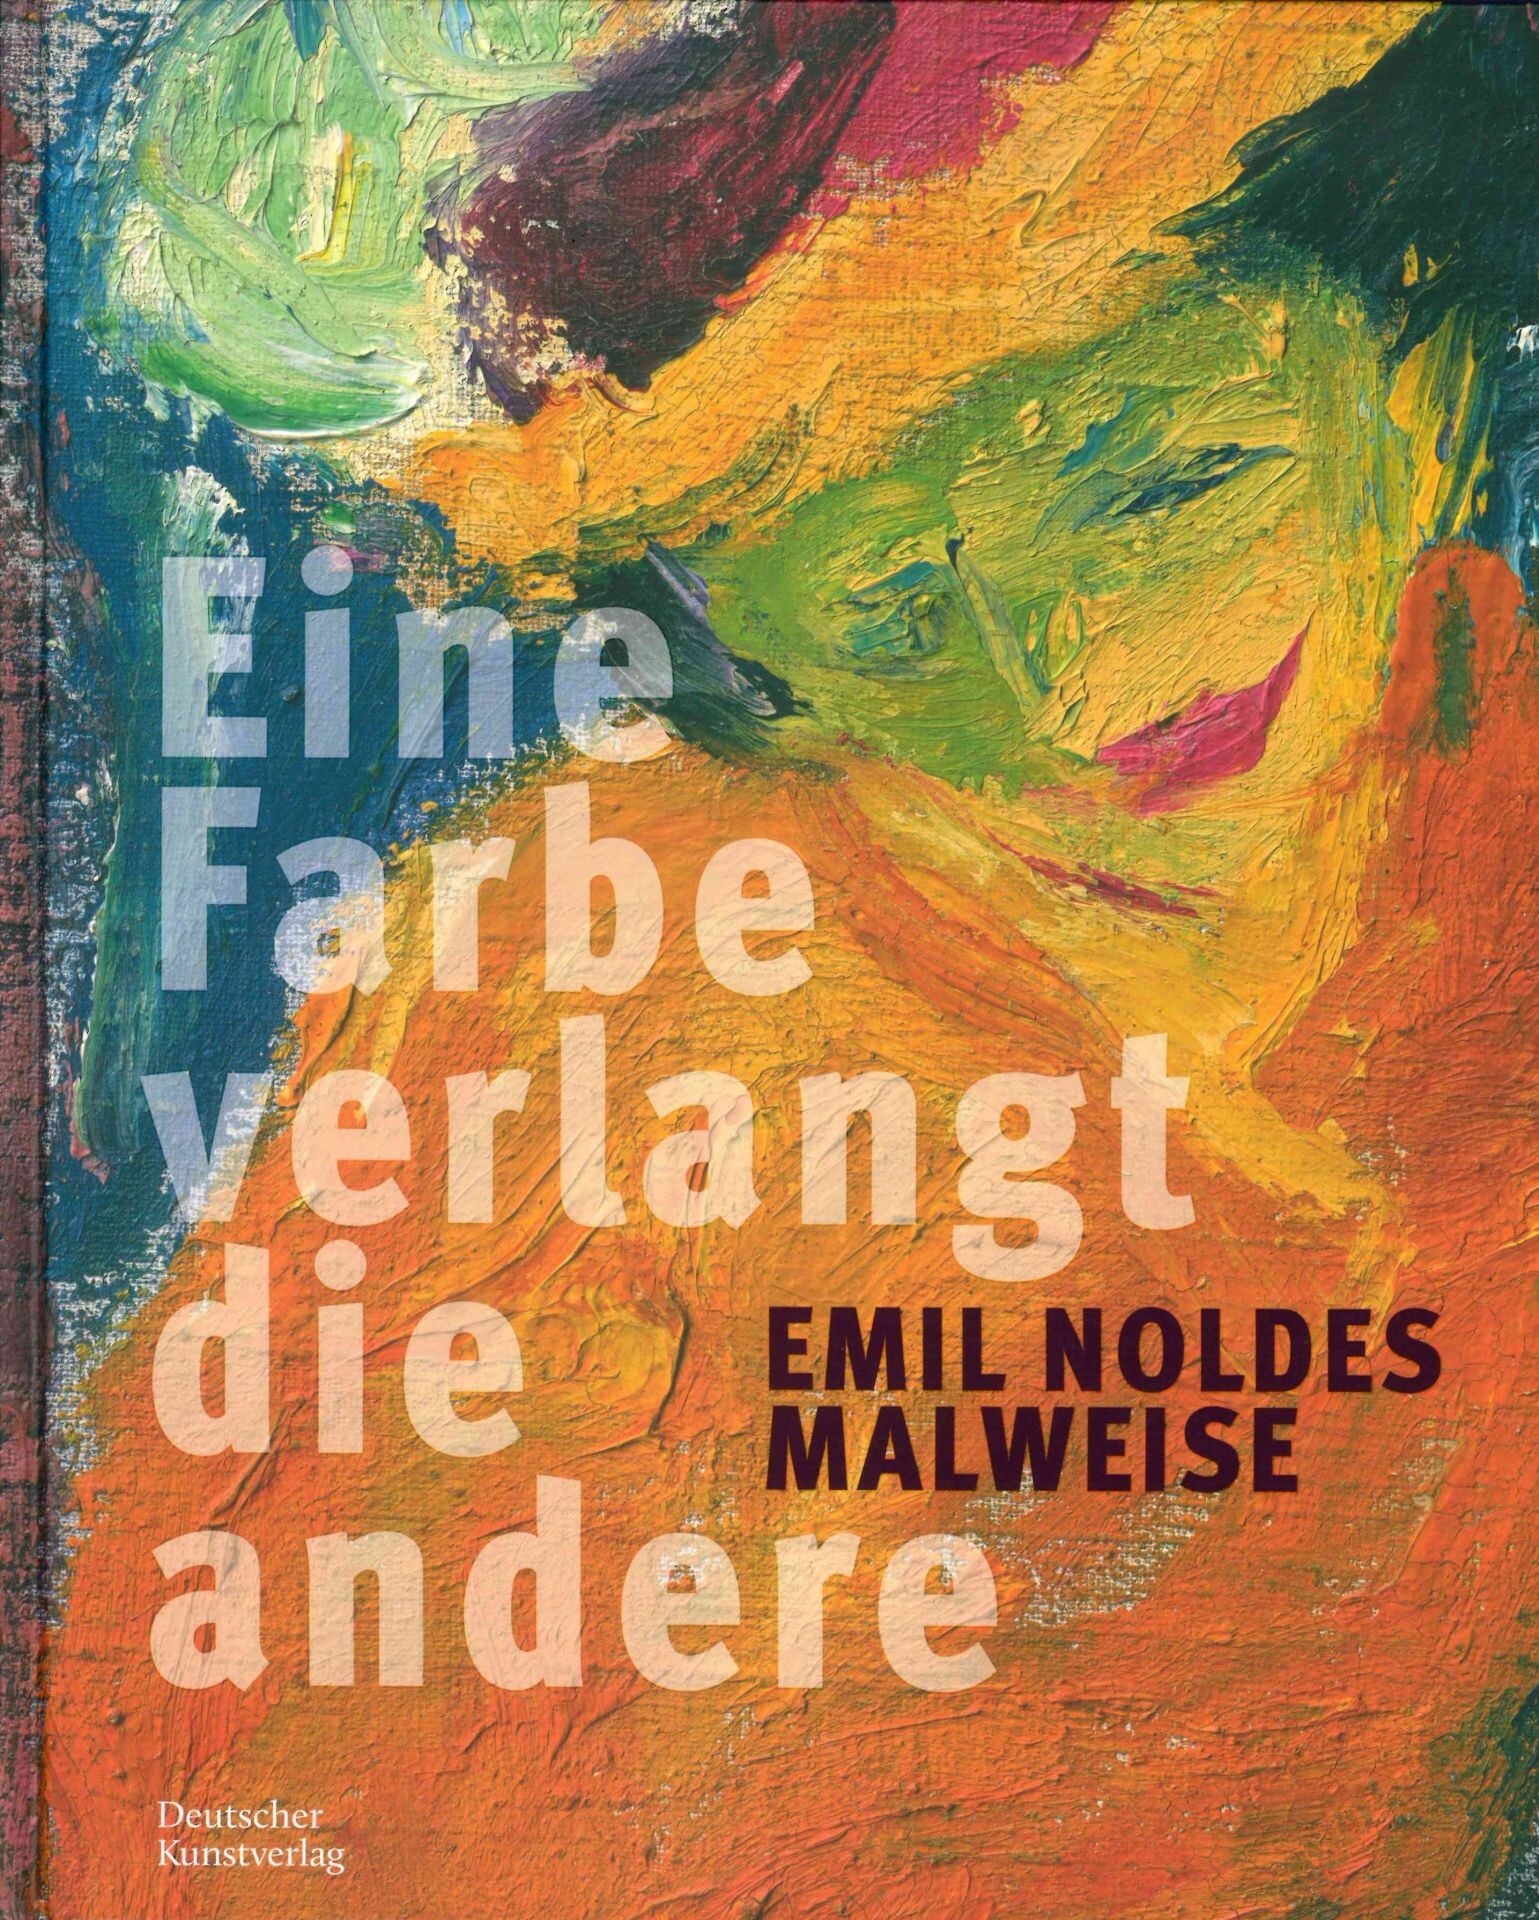  Emil Noldes Malweise. Eine Farbe verlangt die andere